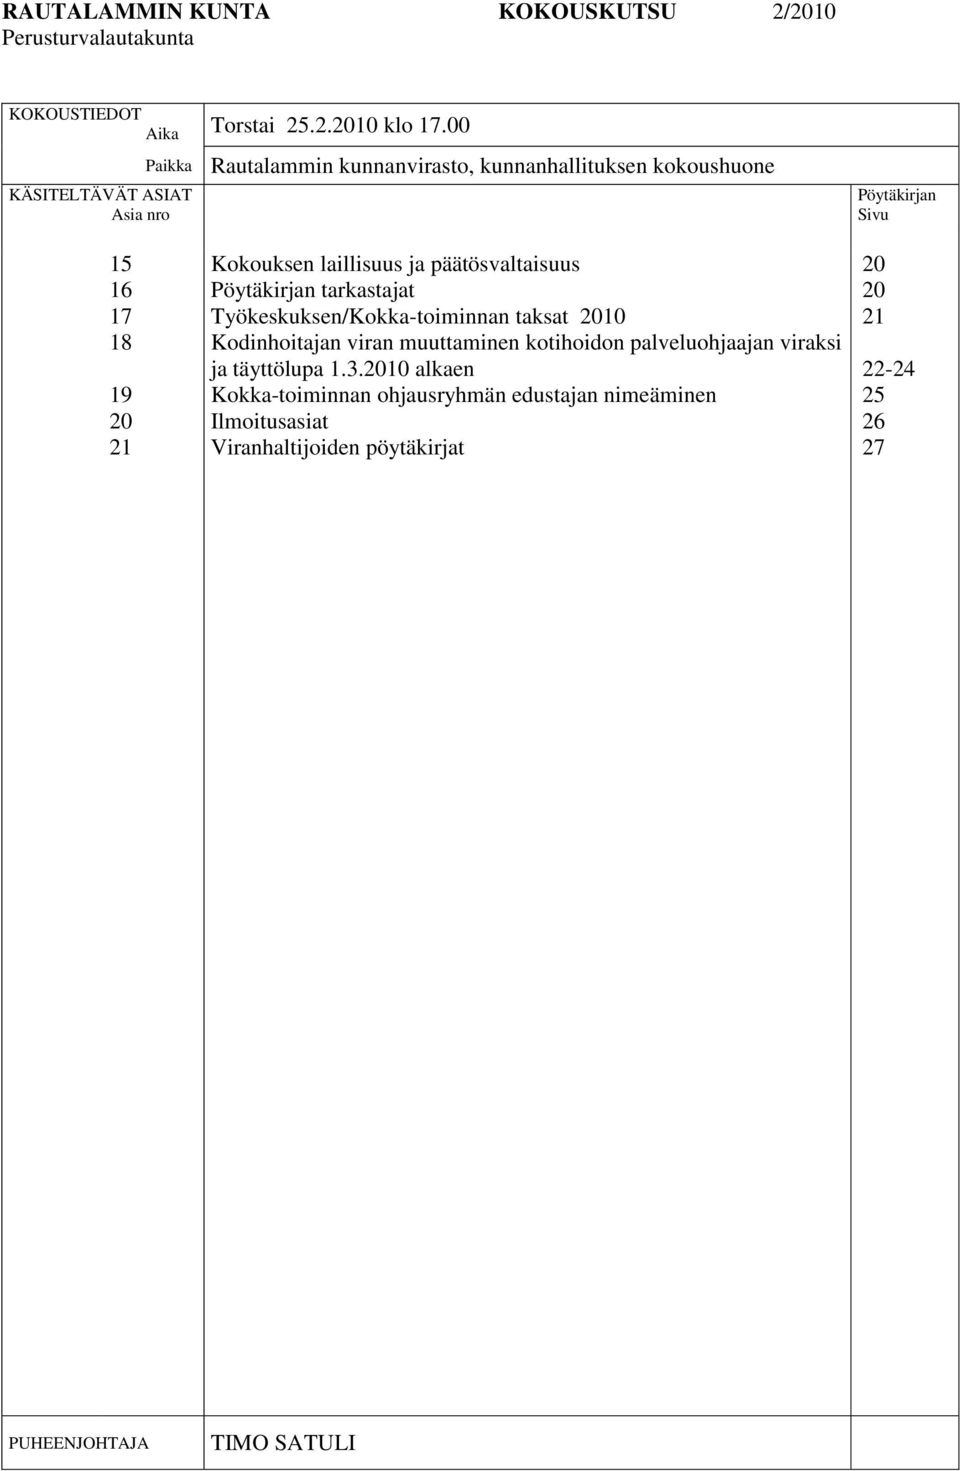 laillisuus ja päätösvaltaisuus Pöytäkirjan tarkastajat Työkeskuksen/Kokka-toiminnan taksat 2010 Kodinhoitajan viran muuttaminen kotihoidon